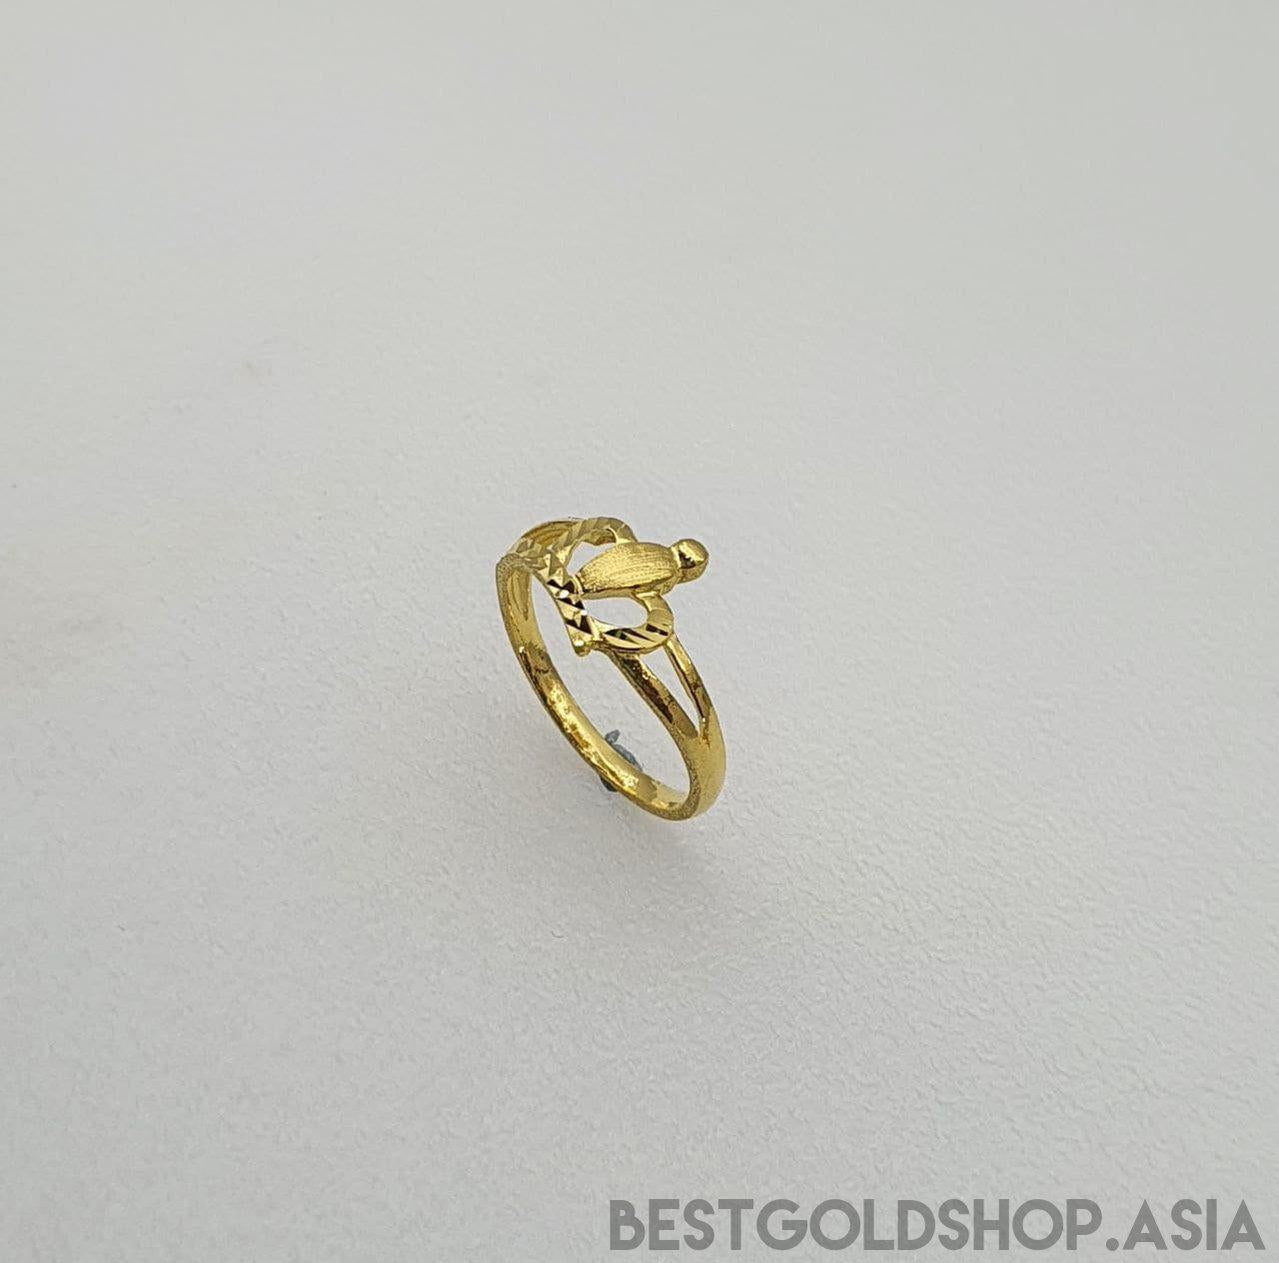 22k / 916 Gold Crown Ring V2-916 gold-Best Gold Shop